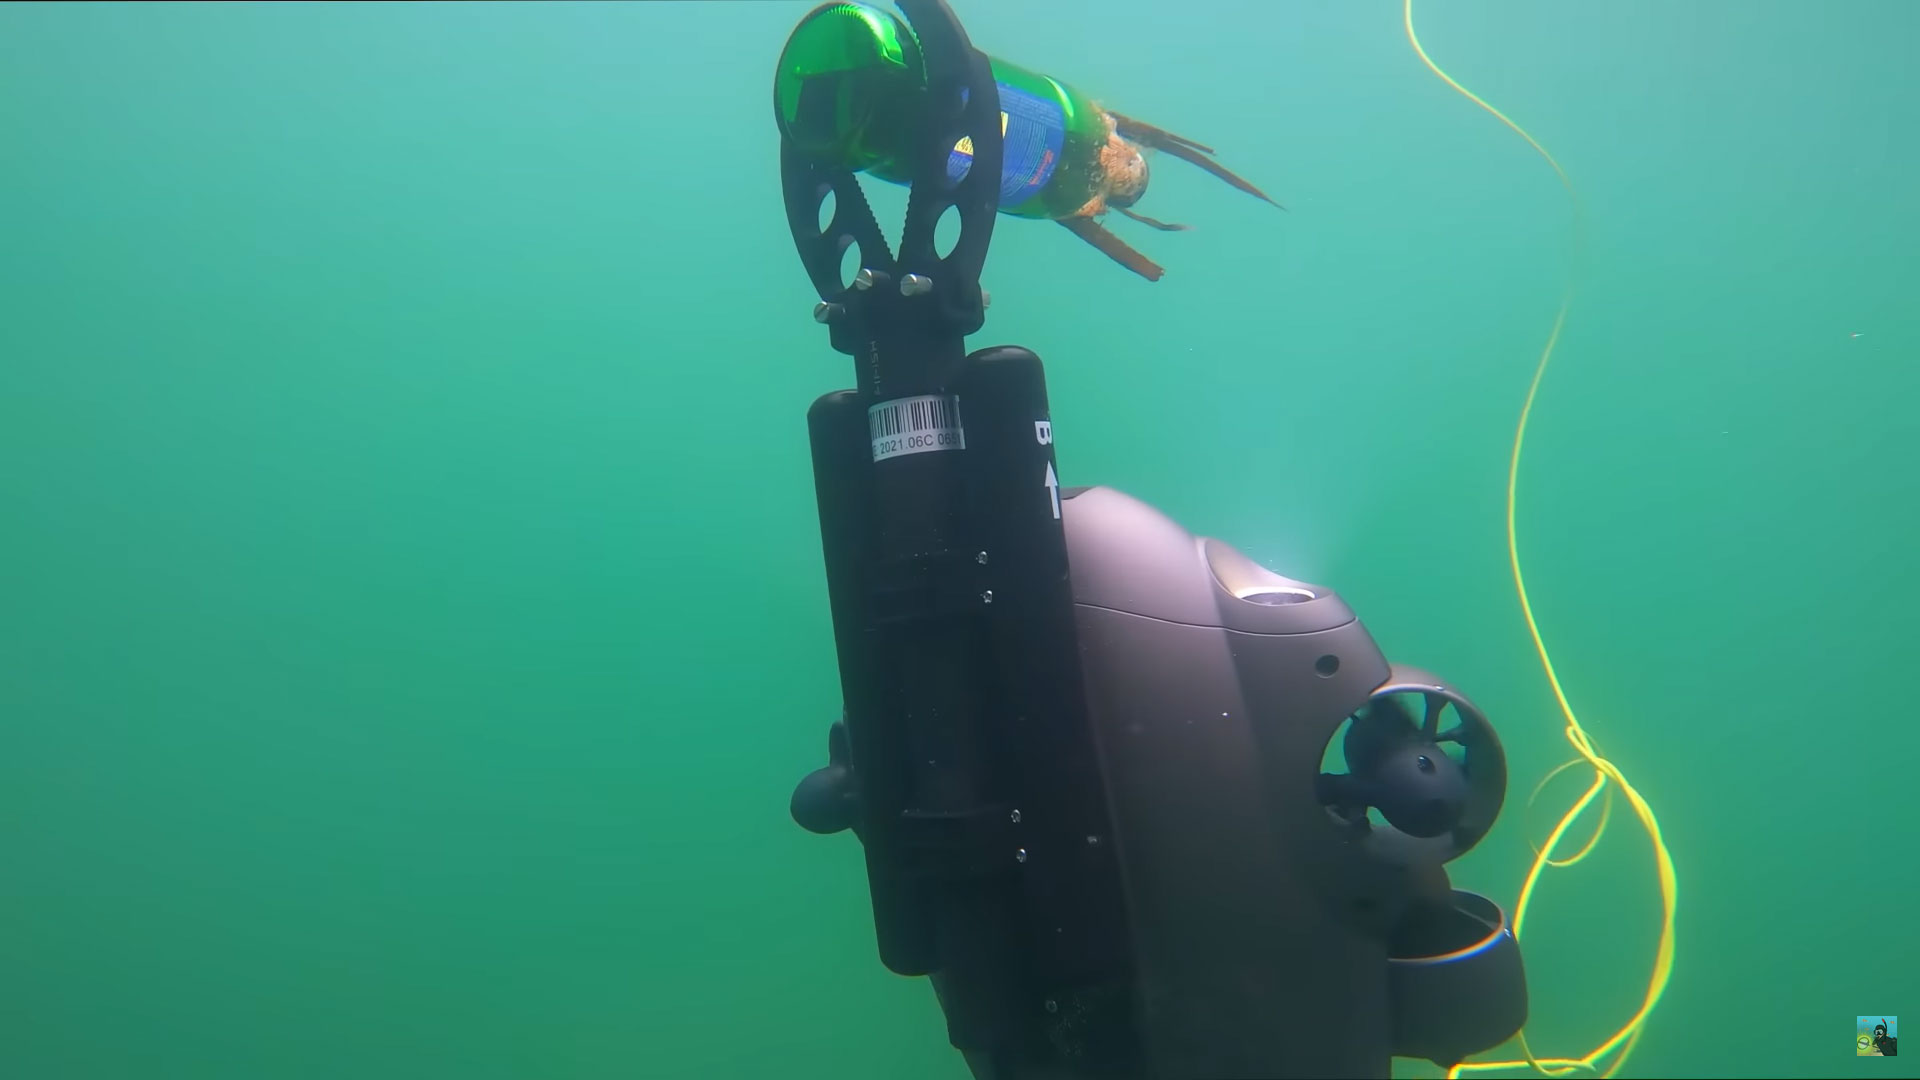 underwater-drone-claw-cleaning-ocean-plastic-bottles.jpg